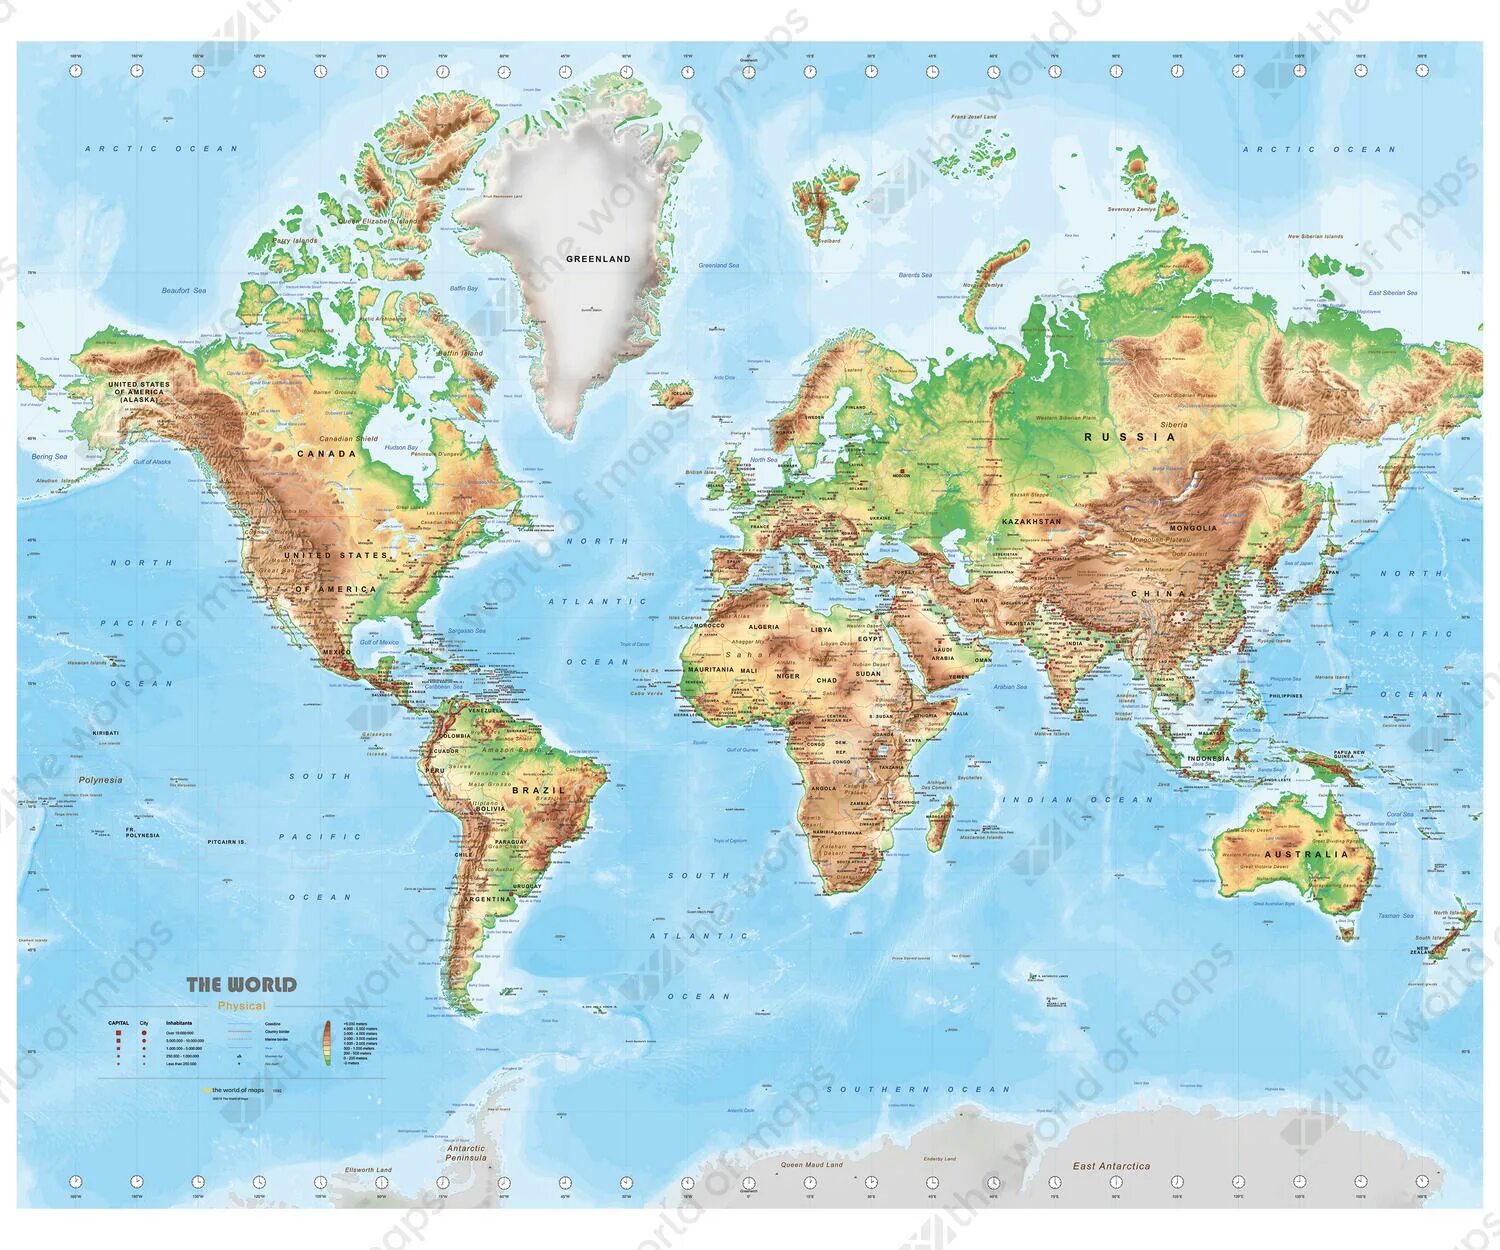 Physical world. World Map физическая. Physical Map of the World. Geographical Map of the World.